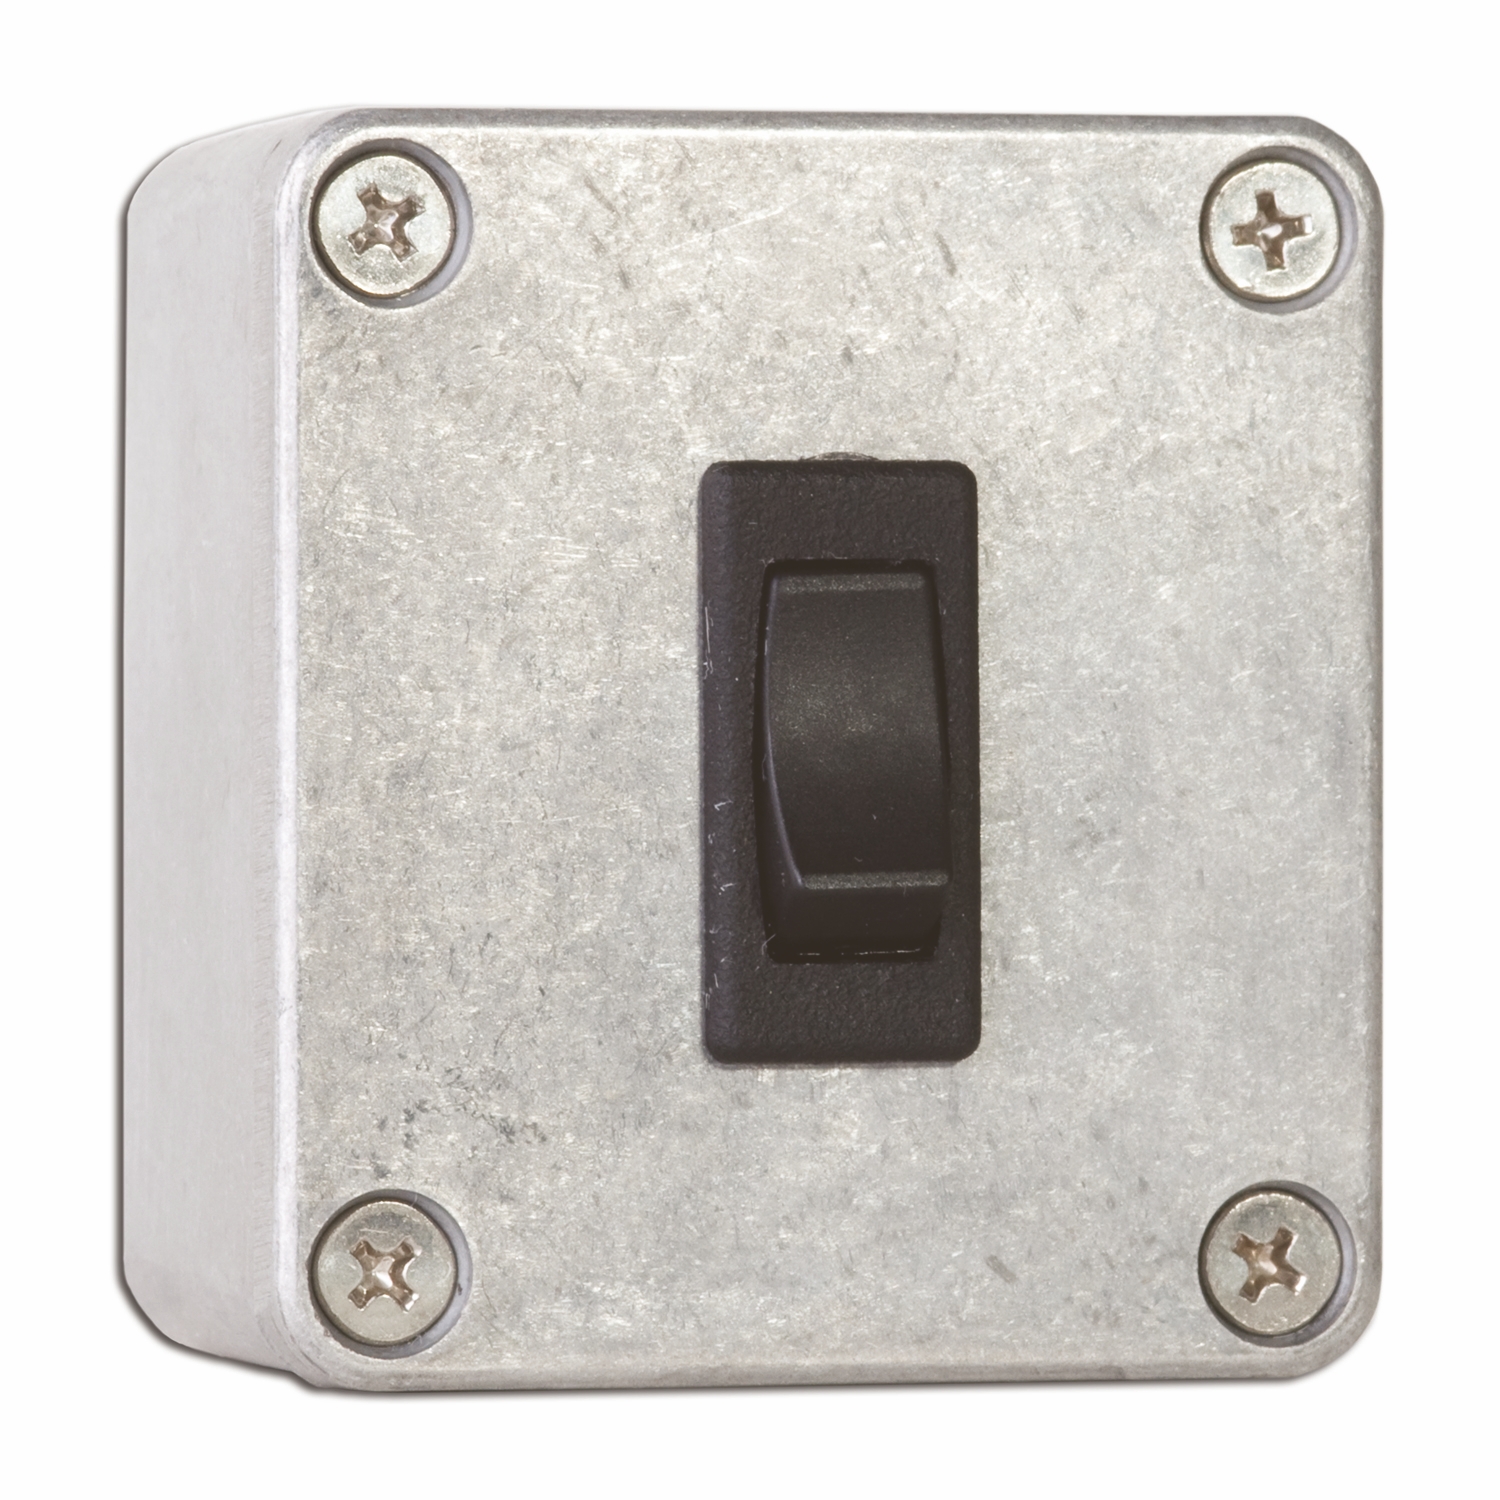 CM-46: CM-45/46 Series:Interruptores de placa de empuje cuadrados de 4-1/2 pulgadas - Interruptor doble activo